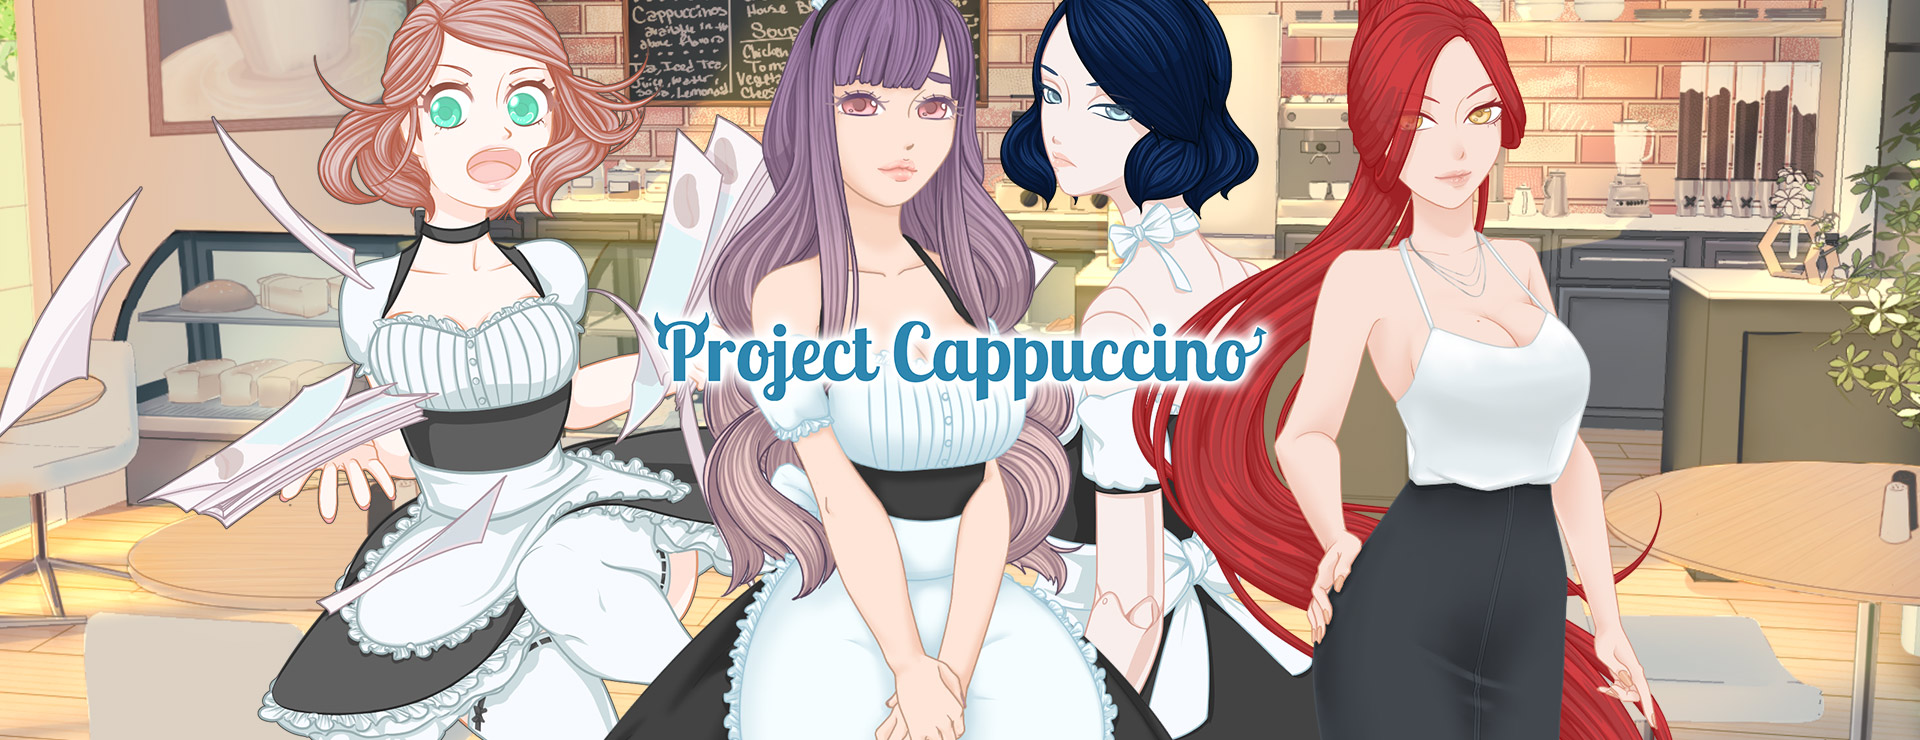 Project Cappuccino - ビジュアルノベル ゲーム